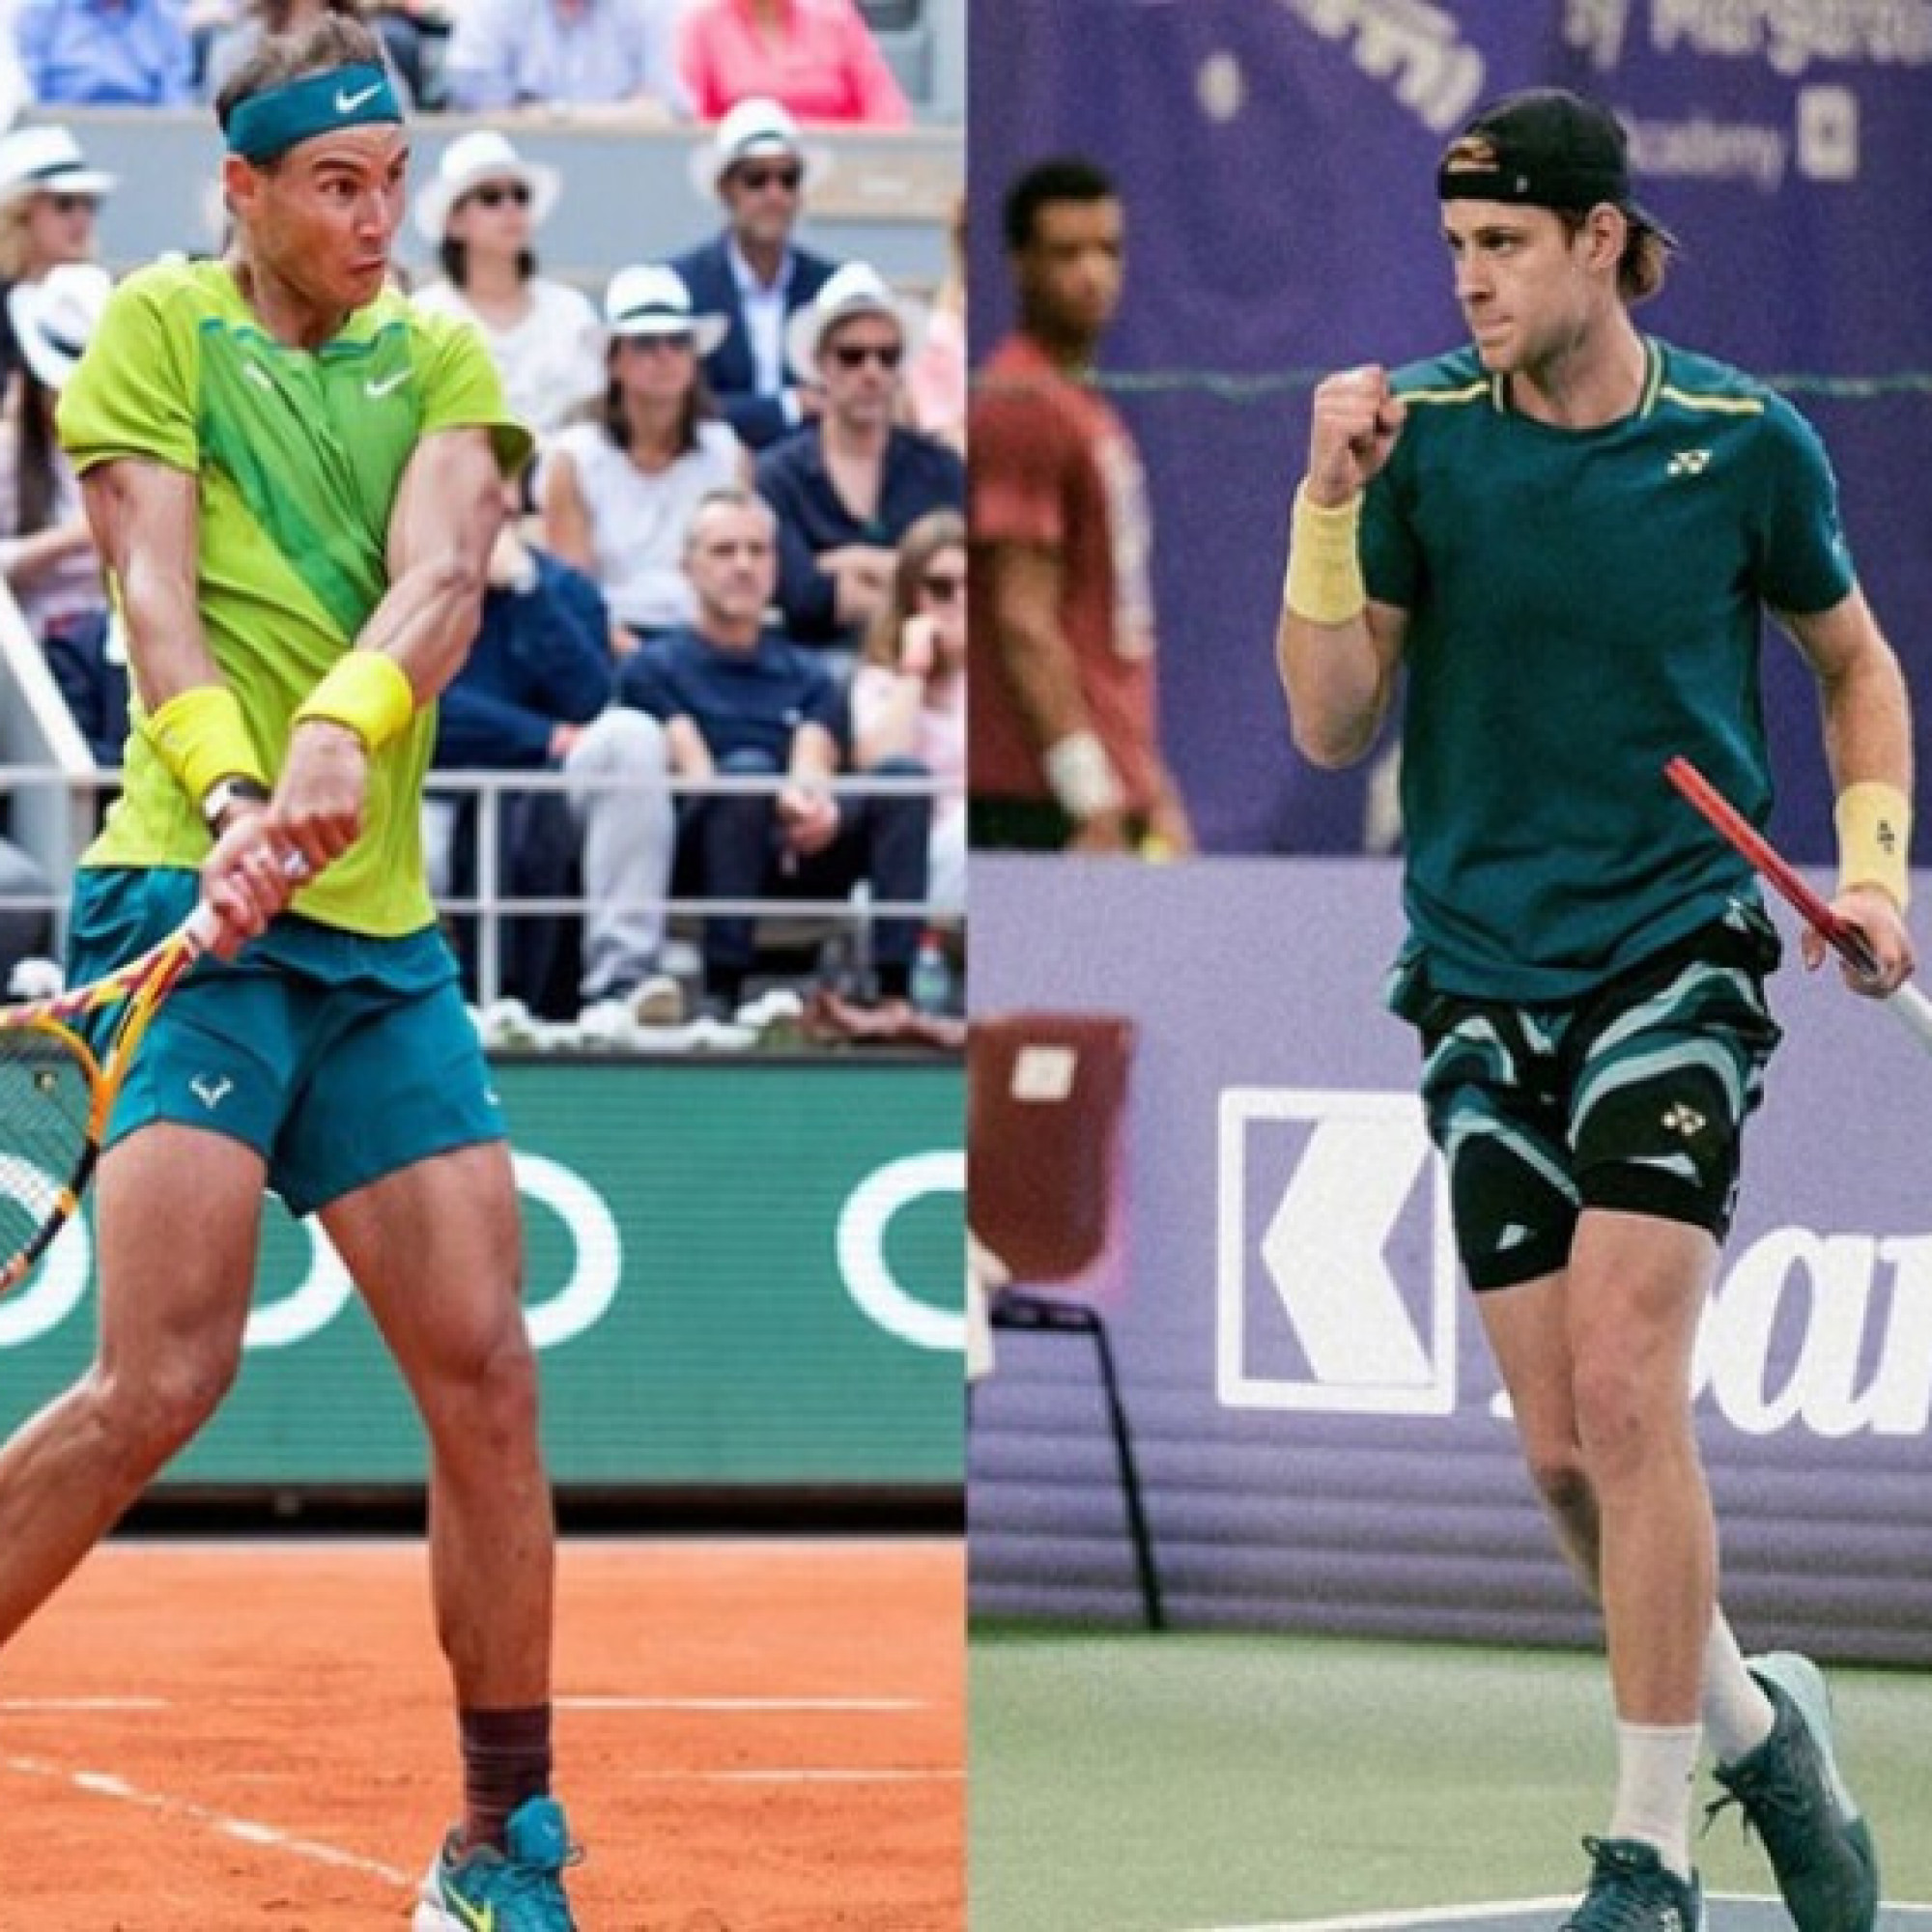  - Video tennis Zizou Bergs - Nadal: Ngược dòng đỉnh cao, xuất sắc tiến bước (Rome Open)